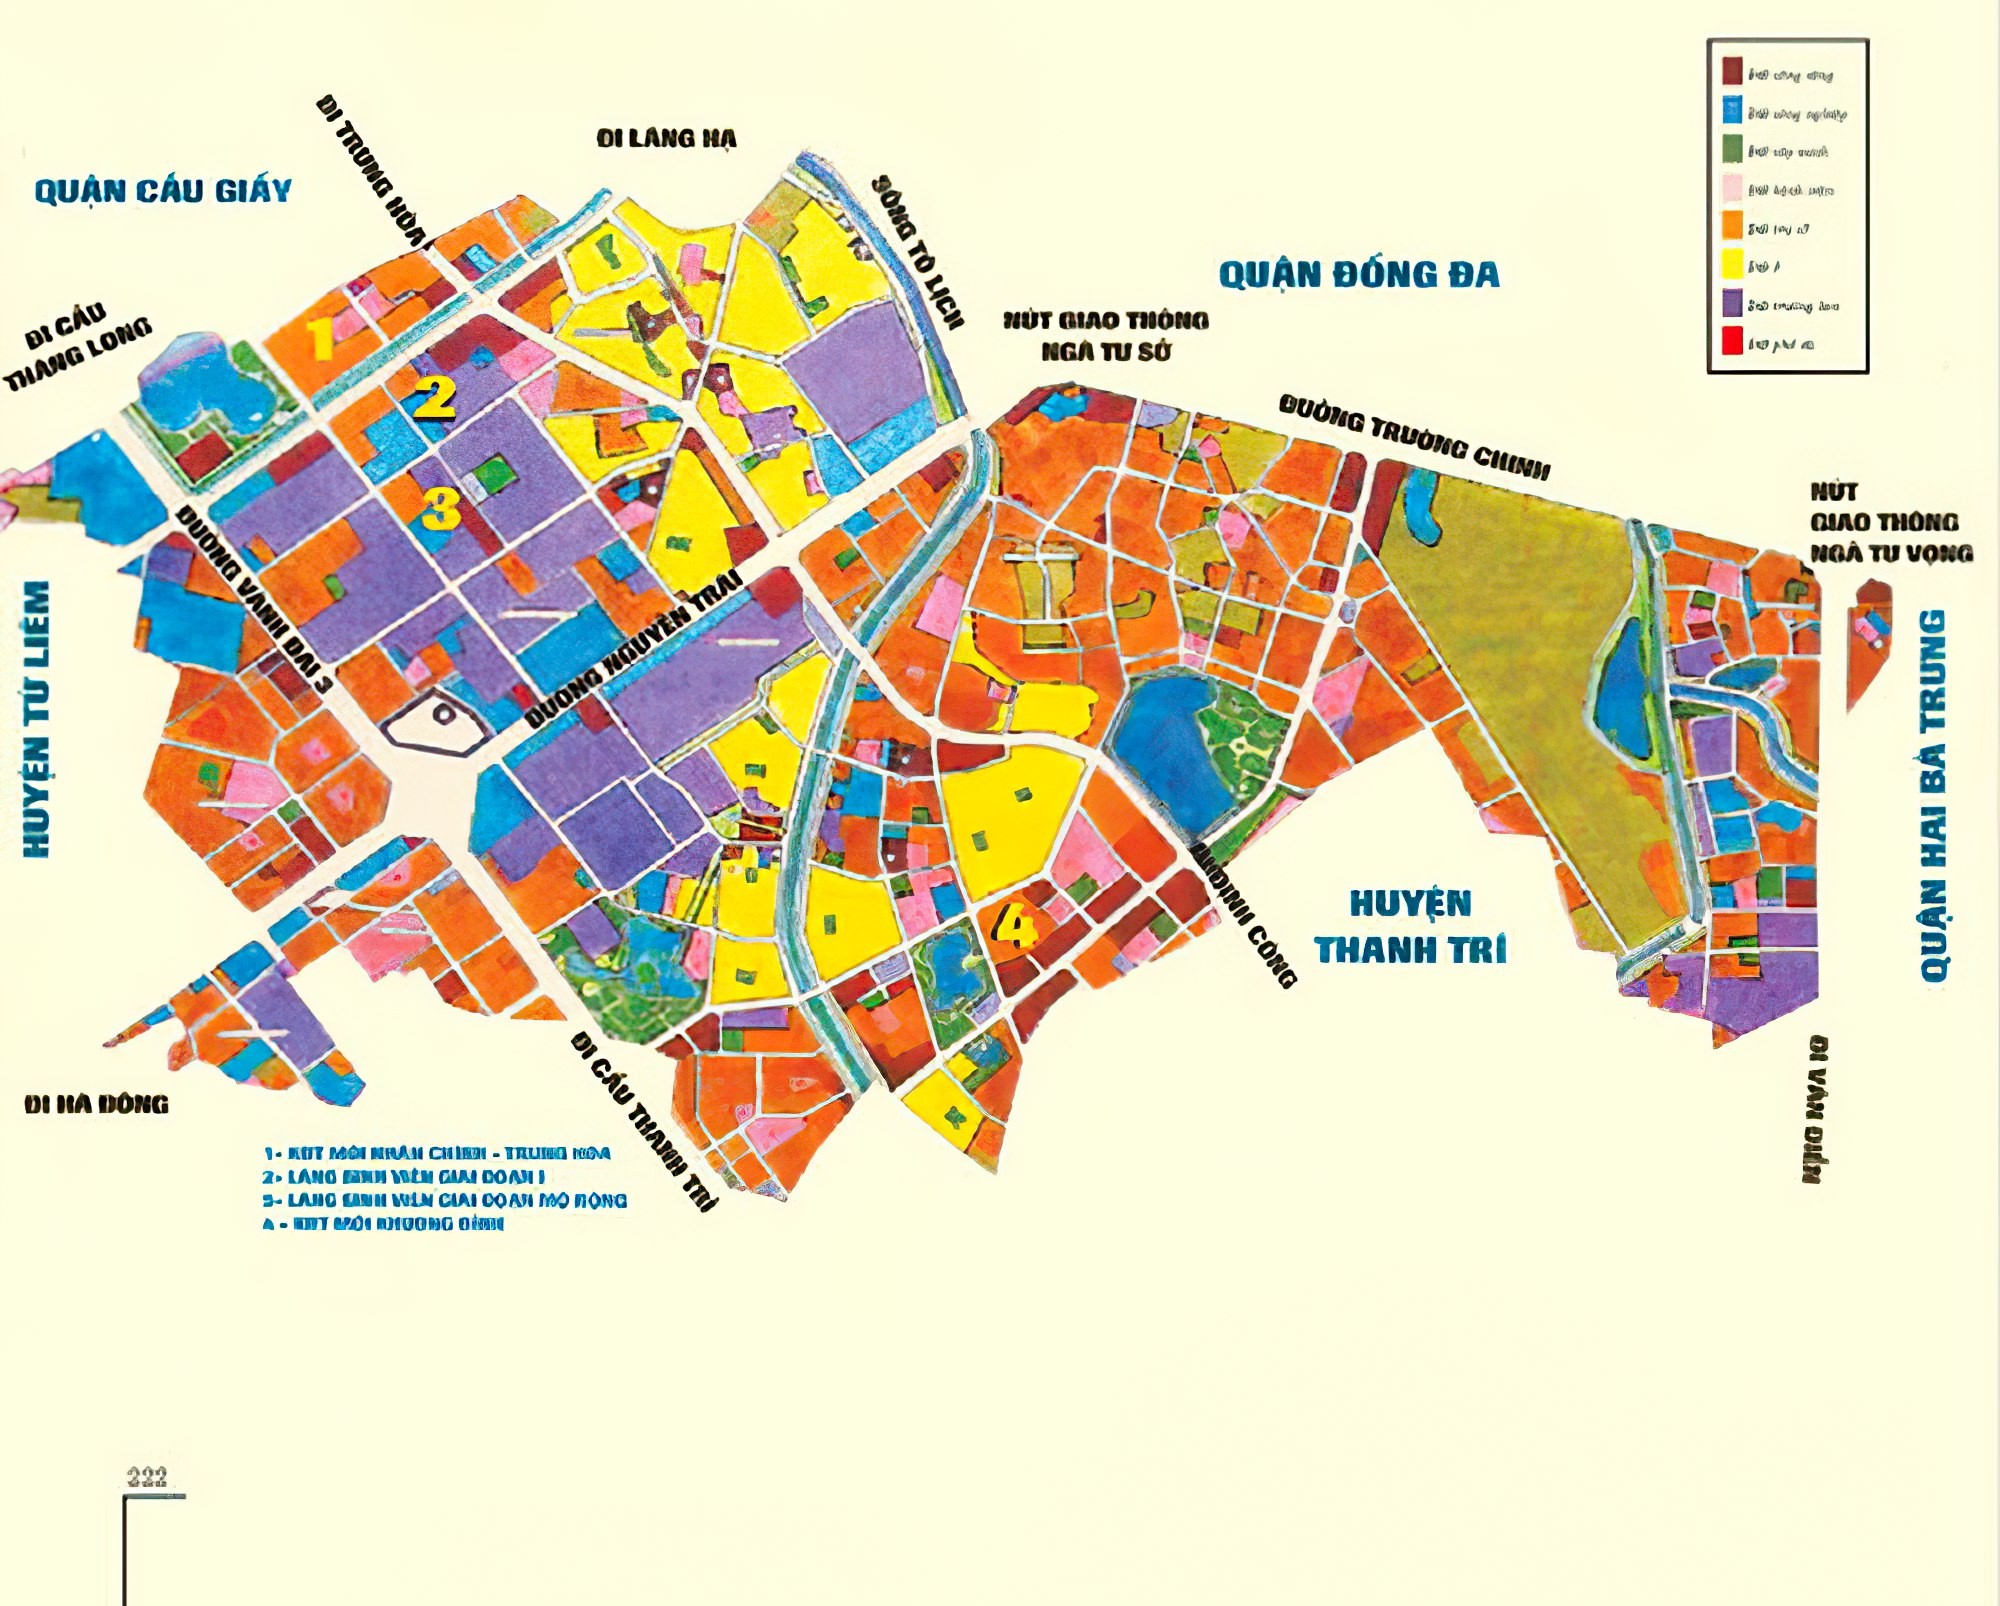 
Hình ảnh bản đồ hành chính quận Thanh Xuân khổ lớn
